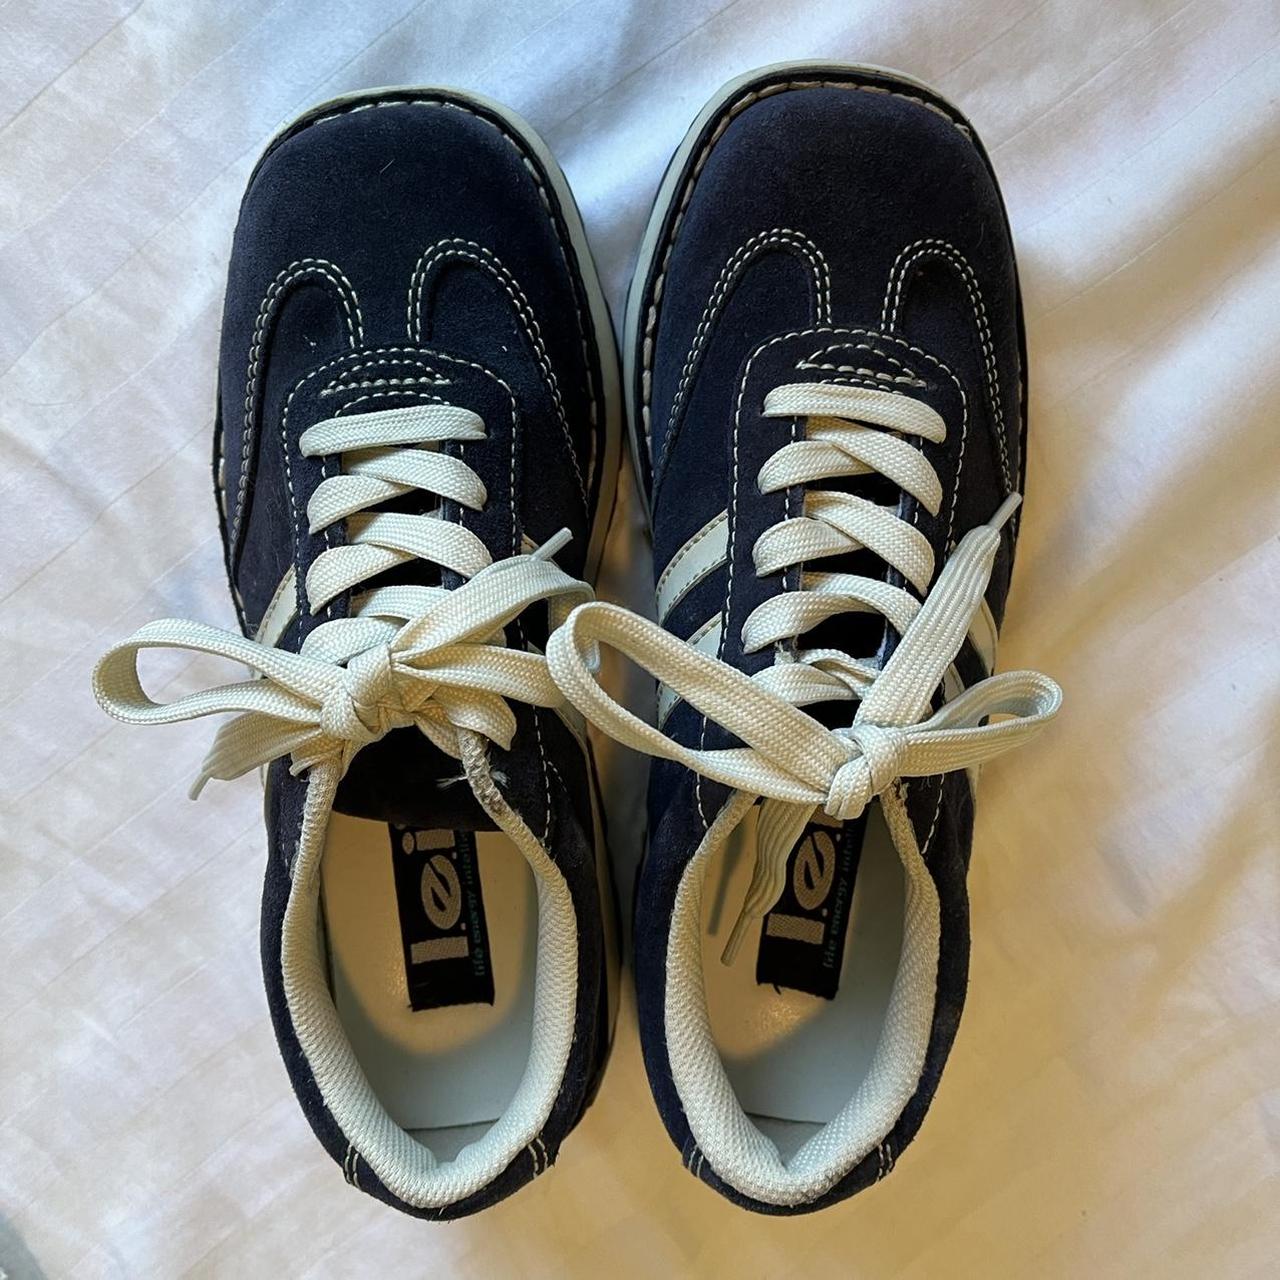 Vintage 90s/y2k LEI sneakers! In great condition... - Depop